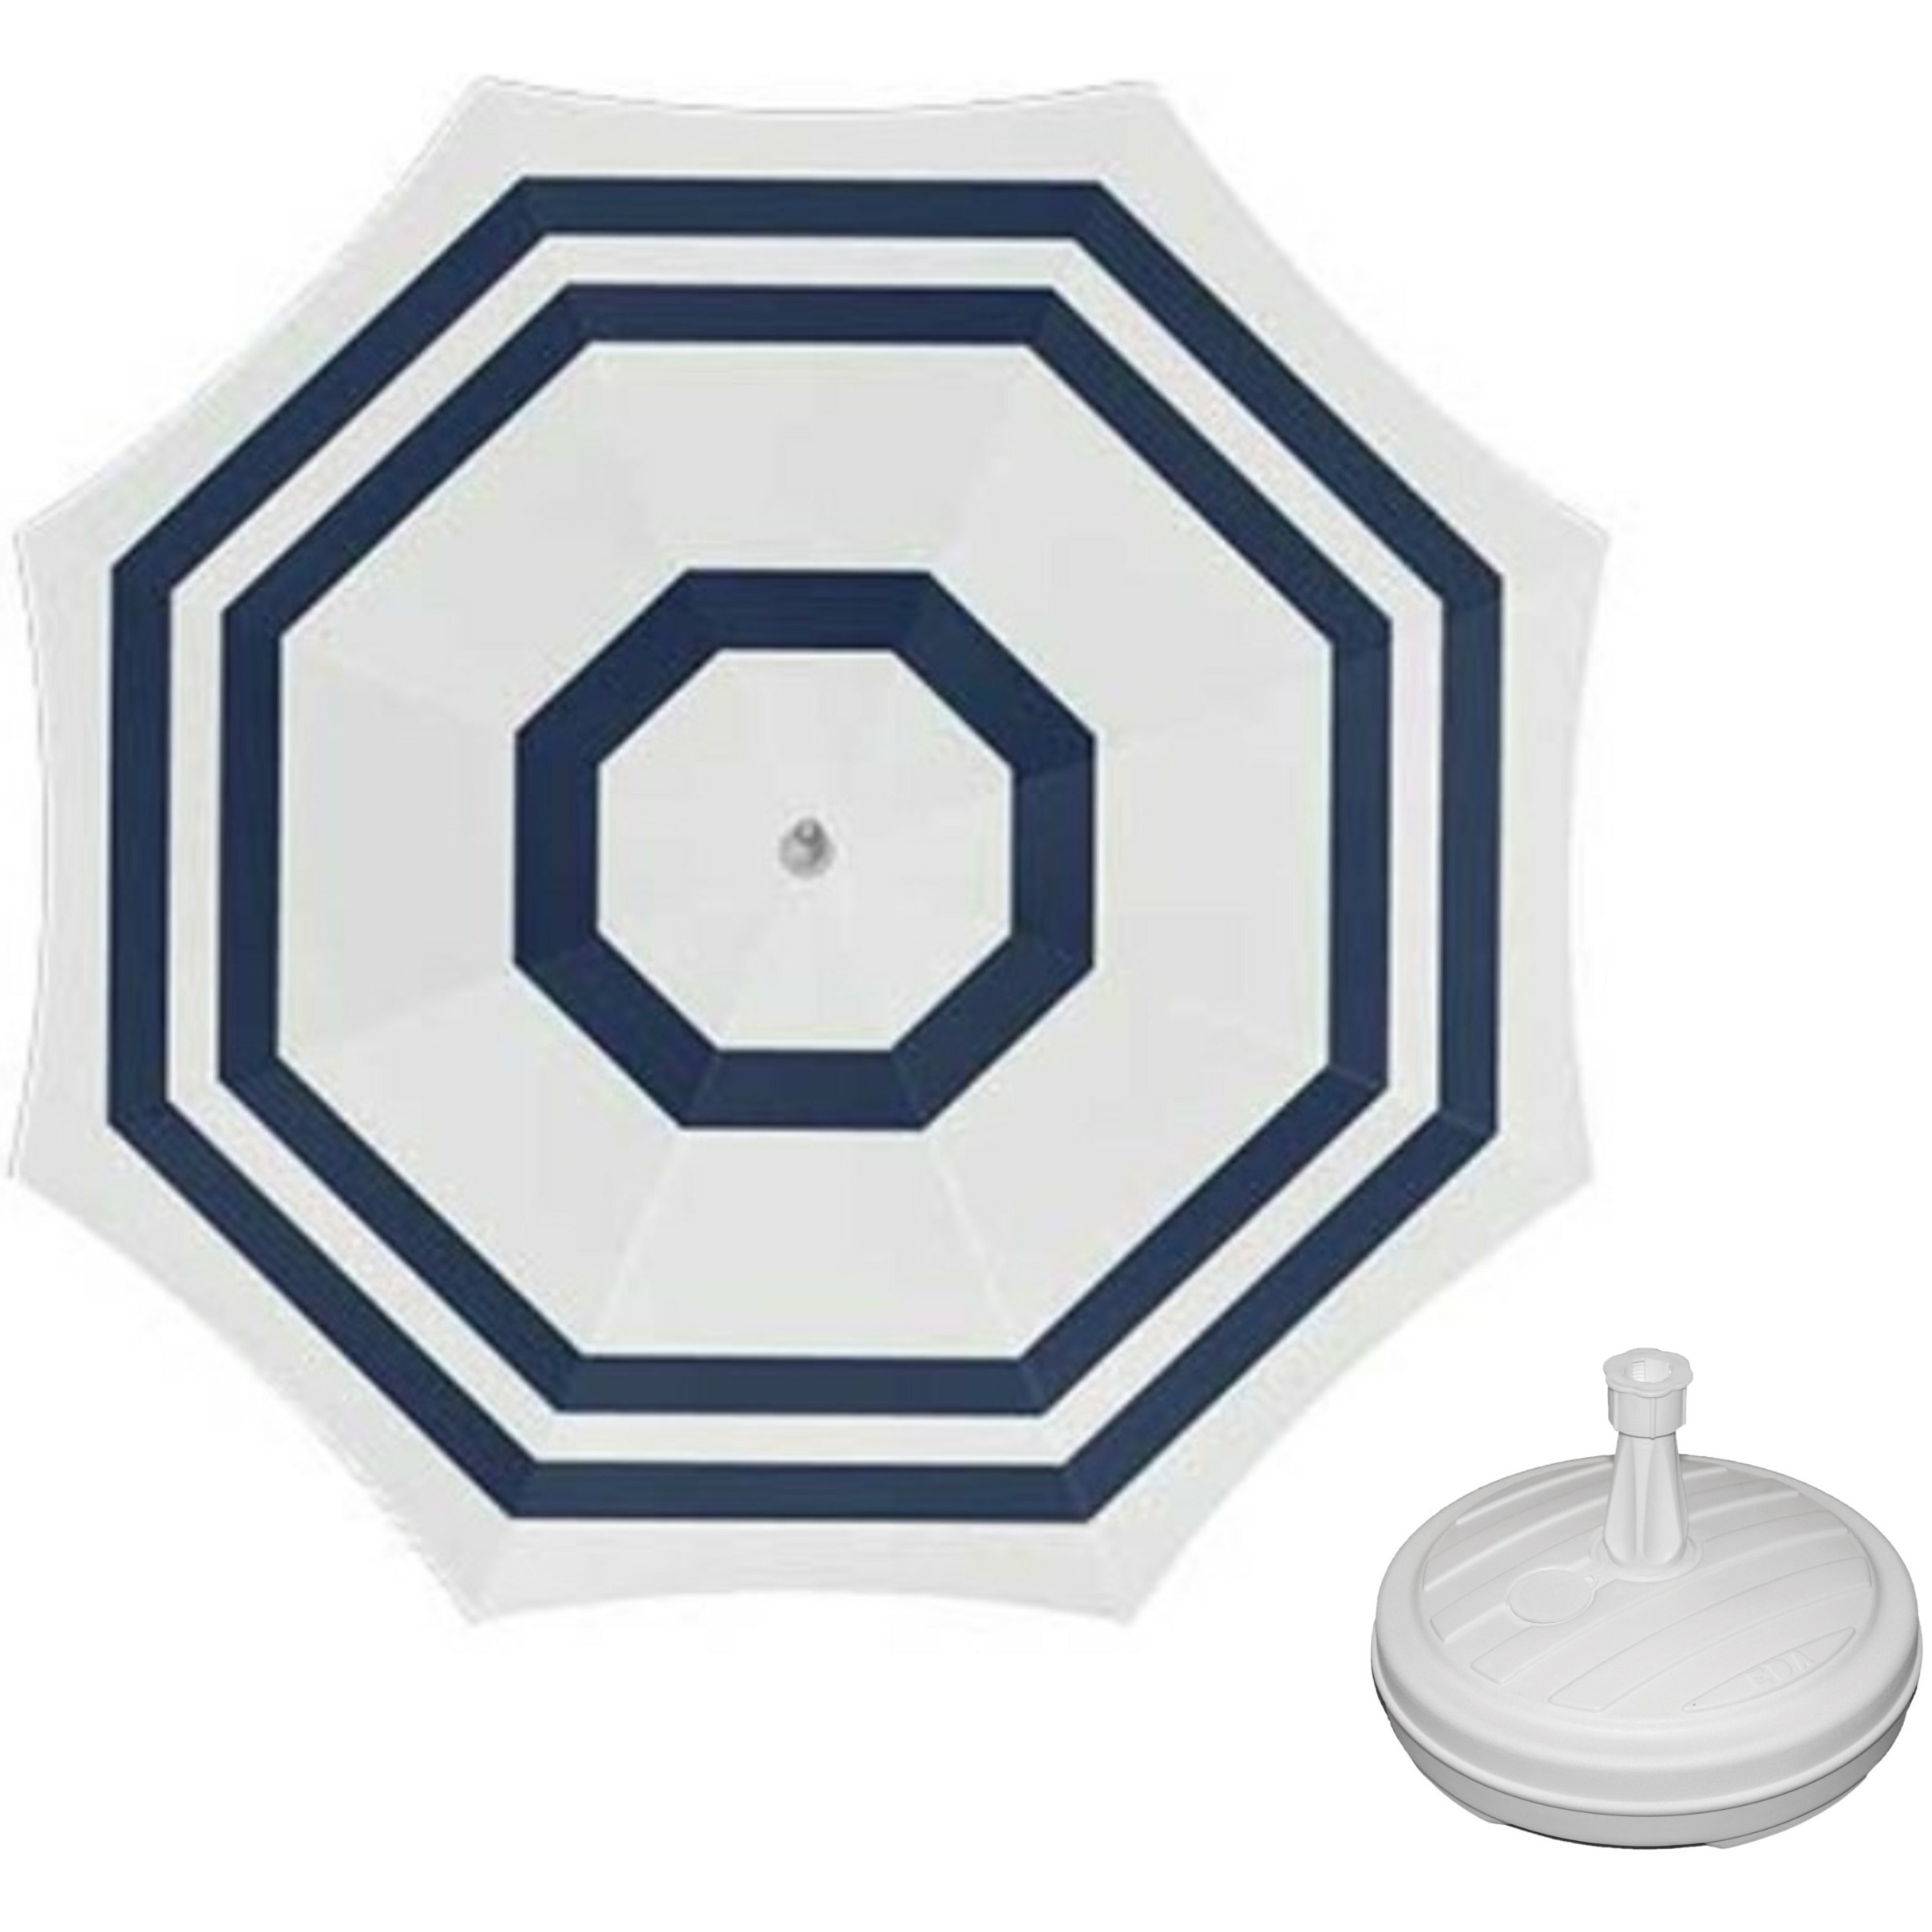 Parasol wit-blauw D160 cm incl. draagtas parasolvoet 42 cm